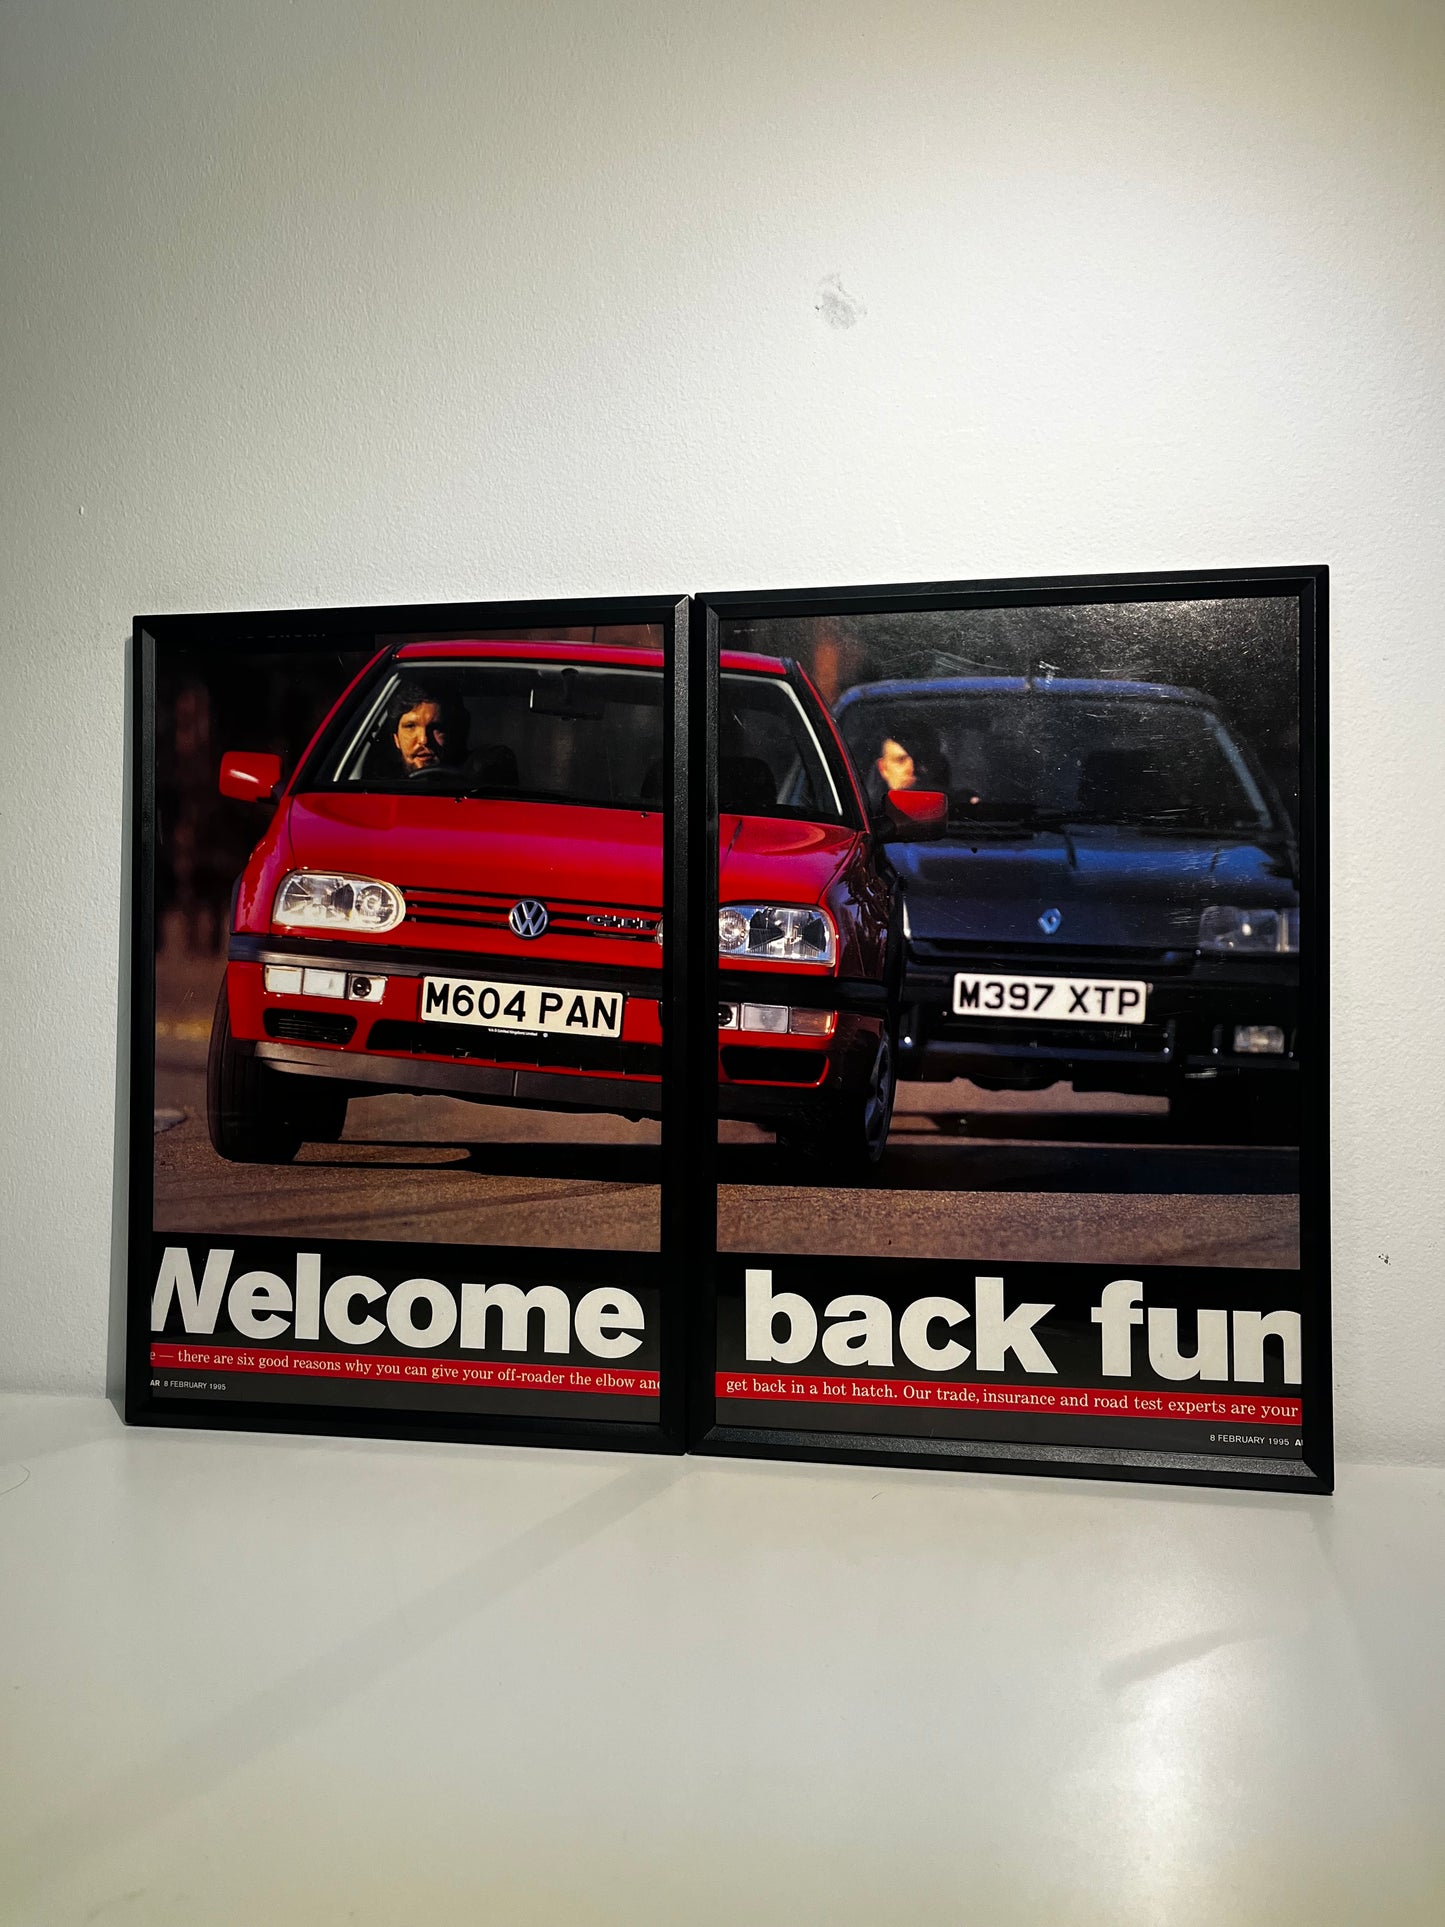 Original 90s Volkswagen Mk3 Golf Advert